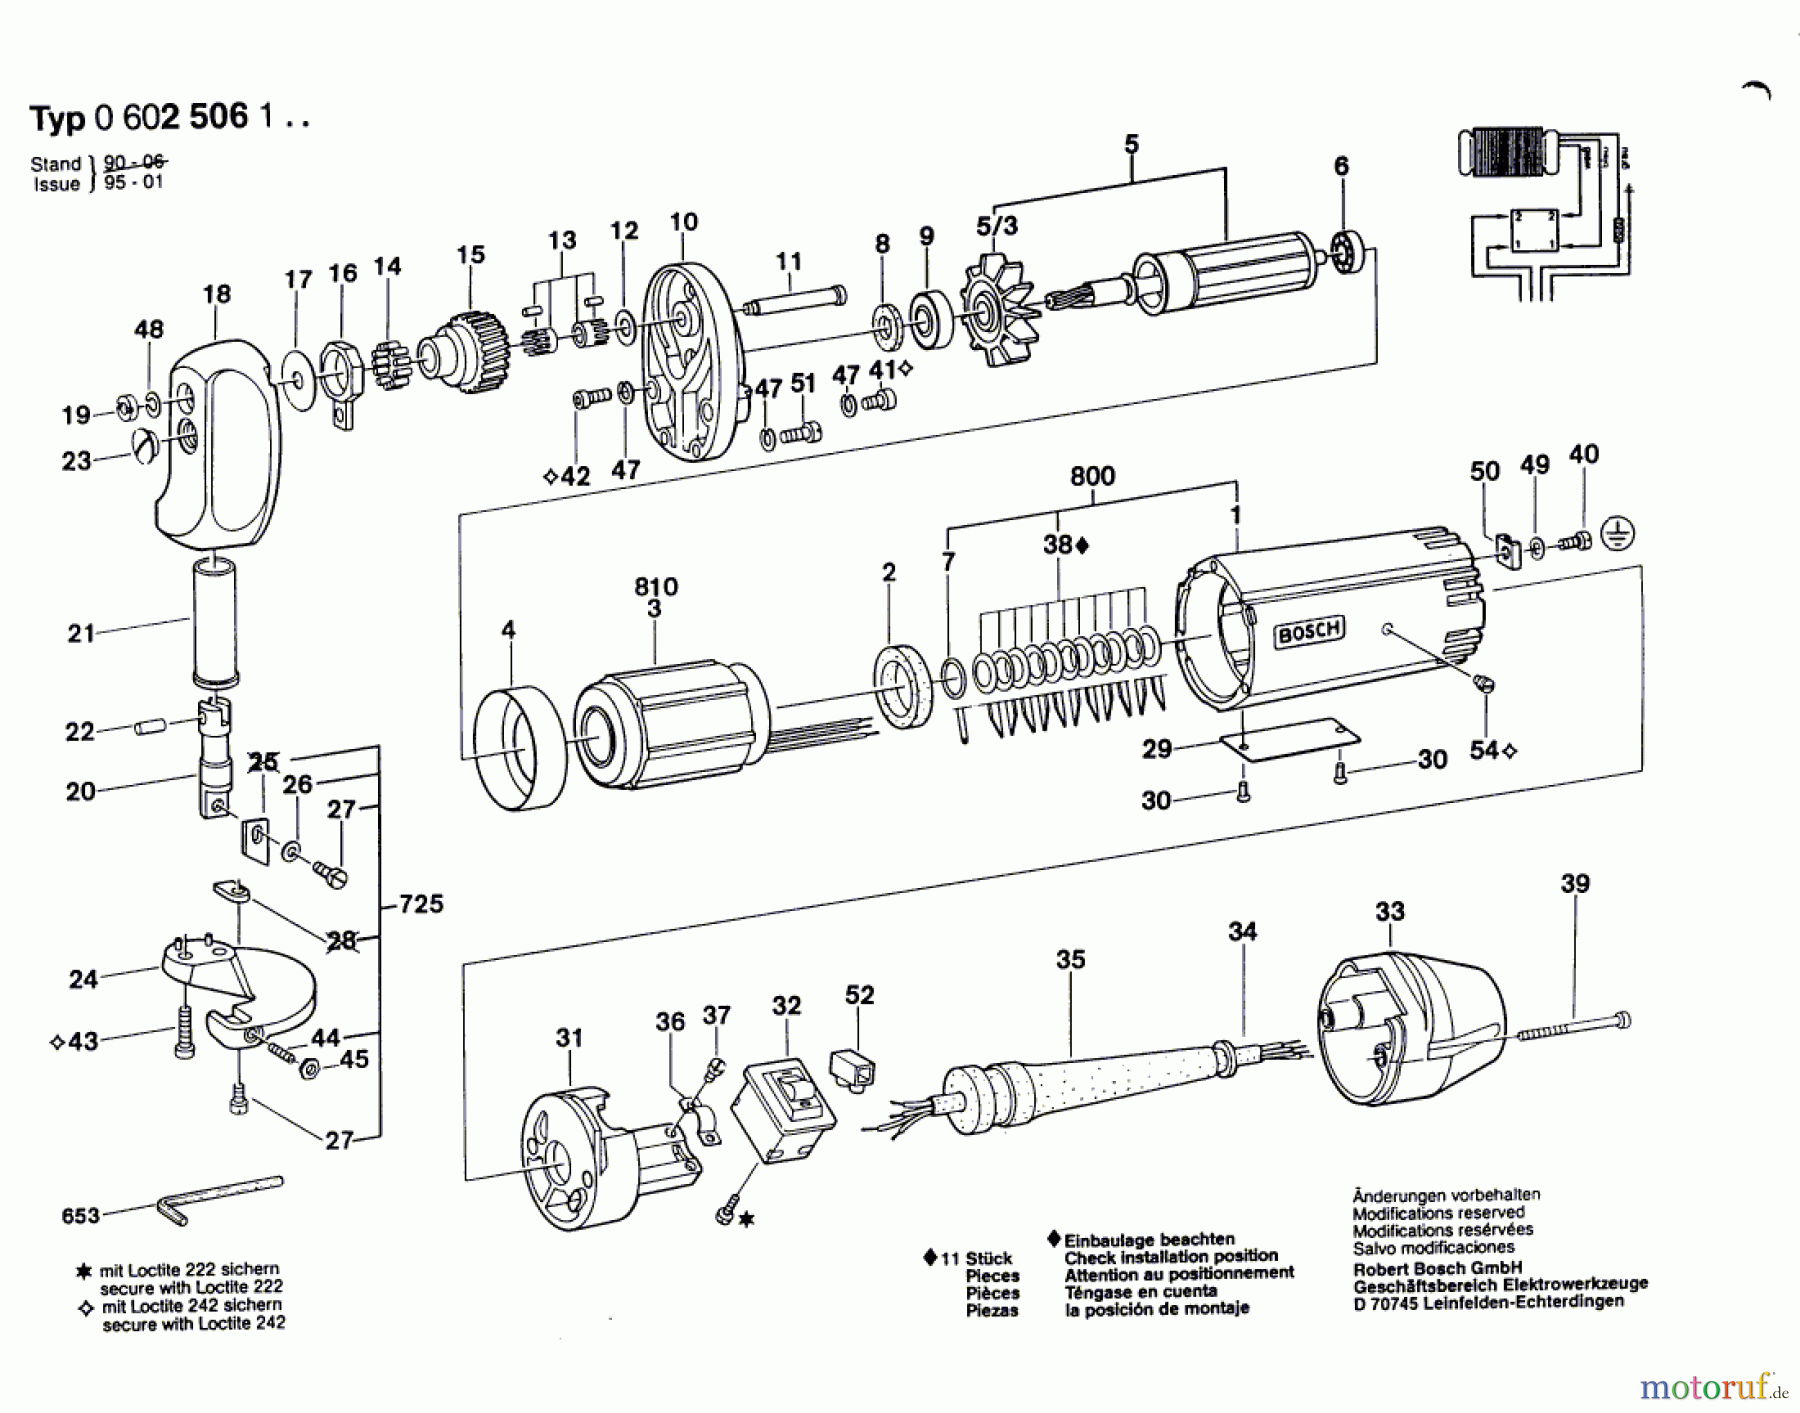  Bosch Werkzeug Hf-Blechschere GR.55 Seite 1